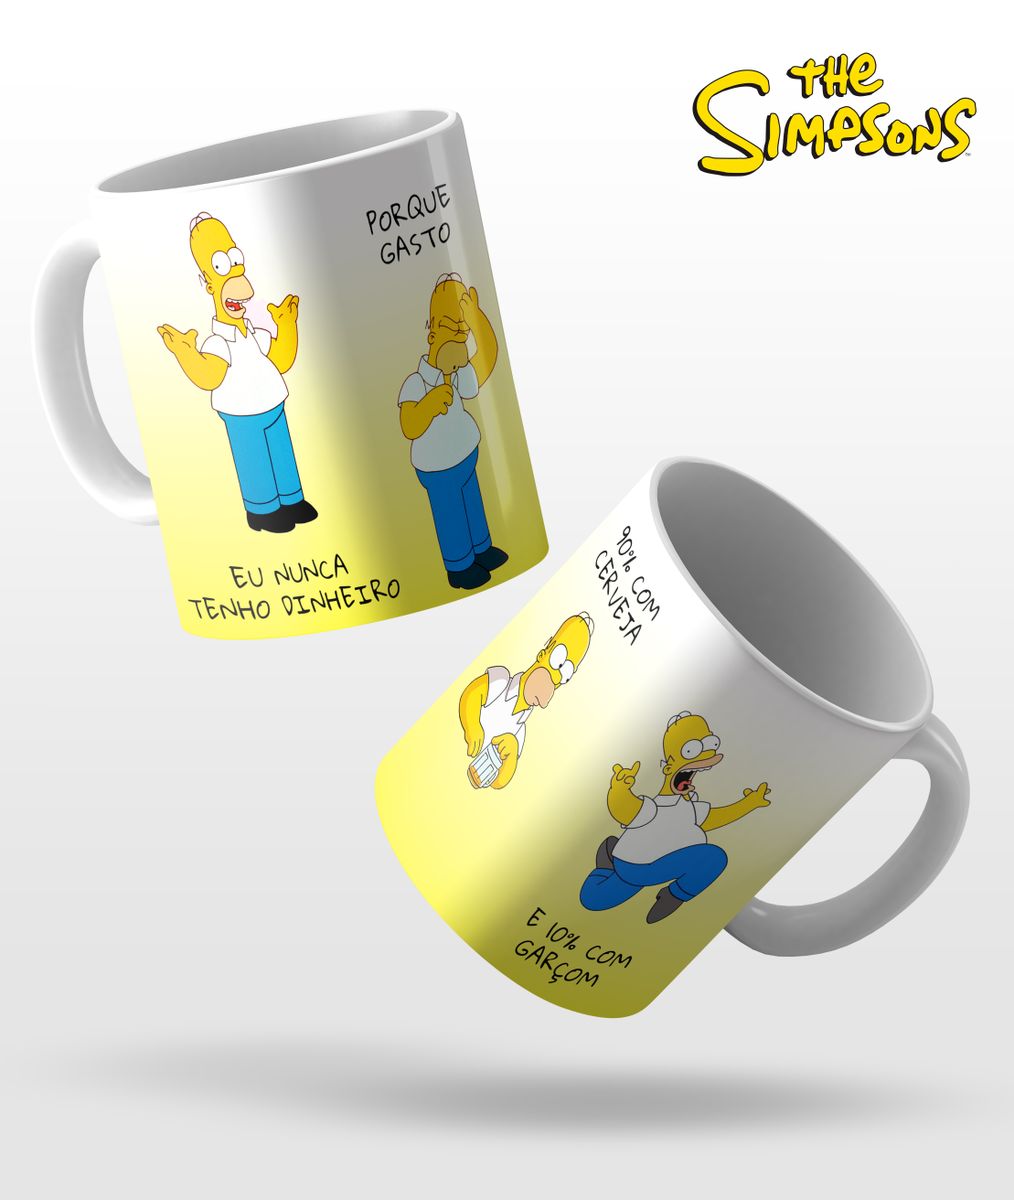 Nome do produto: The Simpsons - Eu nunca tenho dinhero Hommer